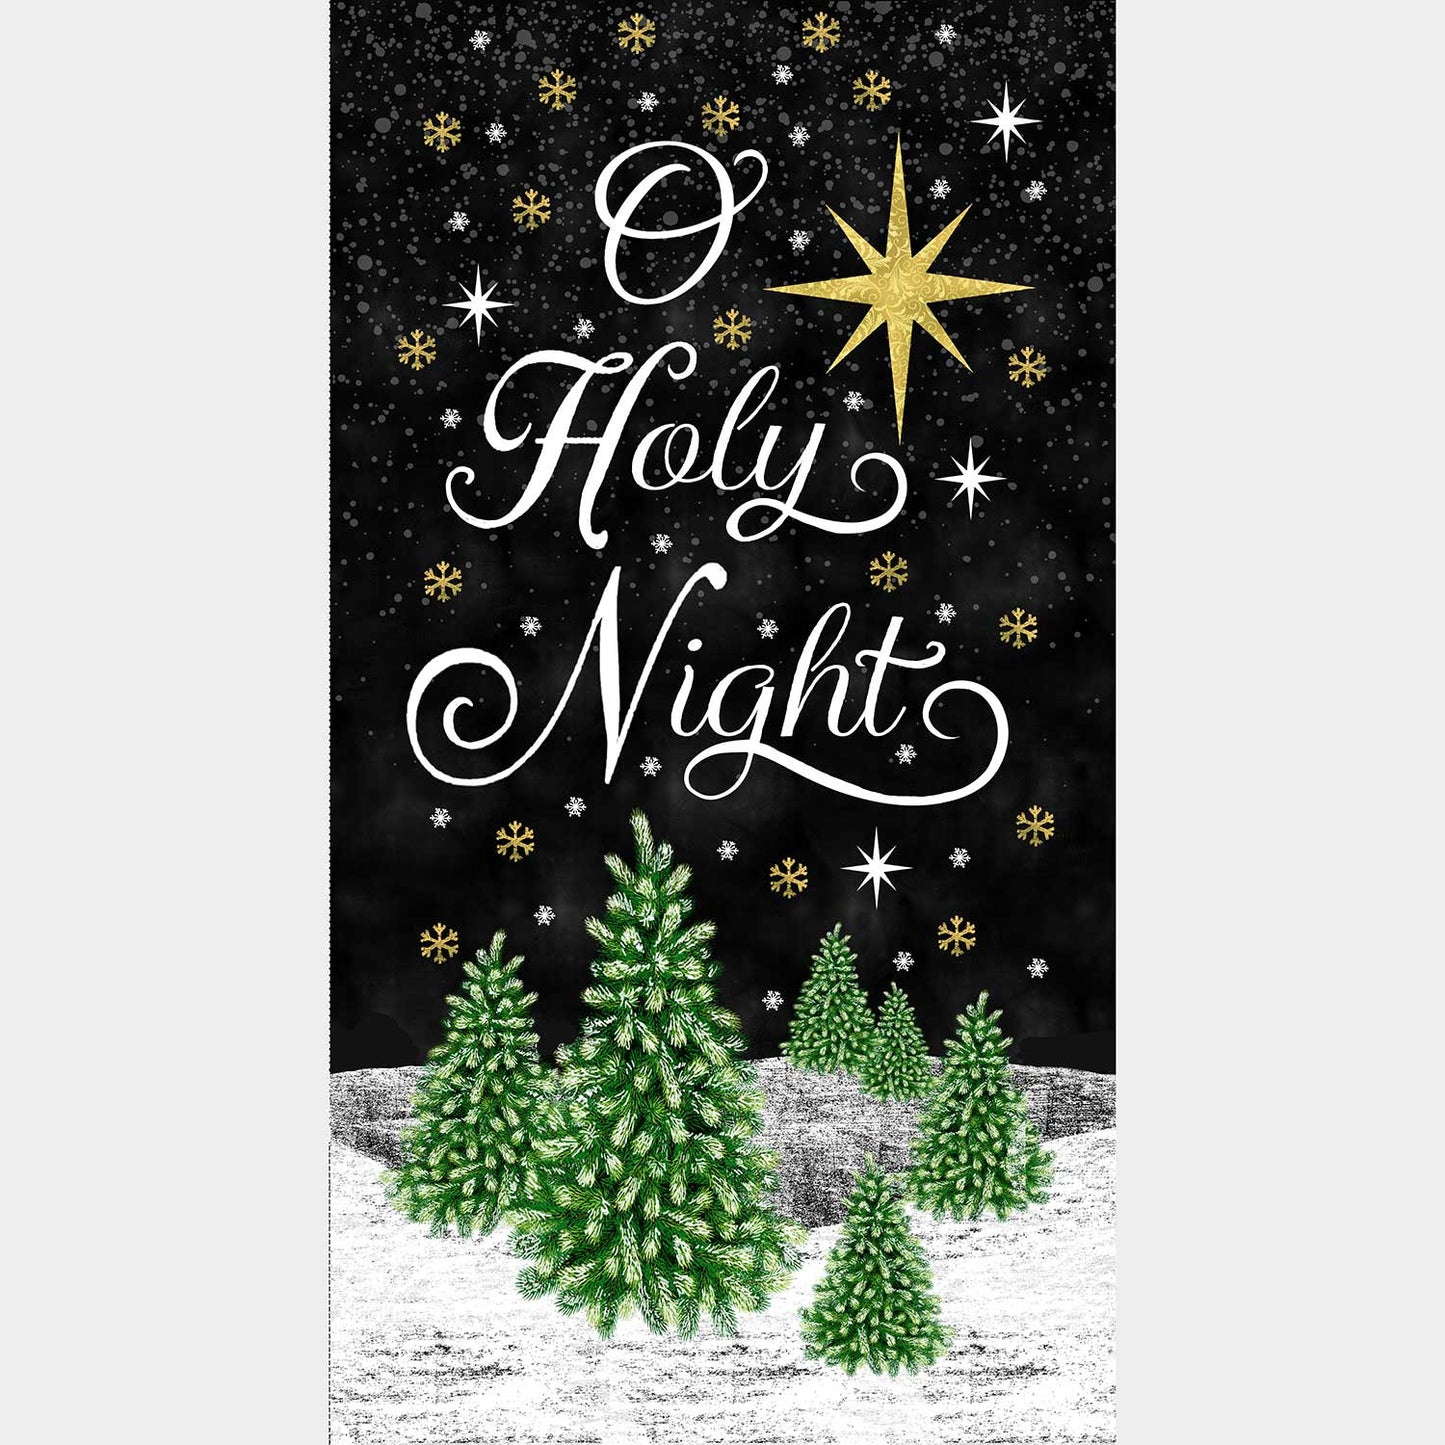 O Holy Night - Holy Night Chalkboard Black Panel Primary Image